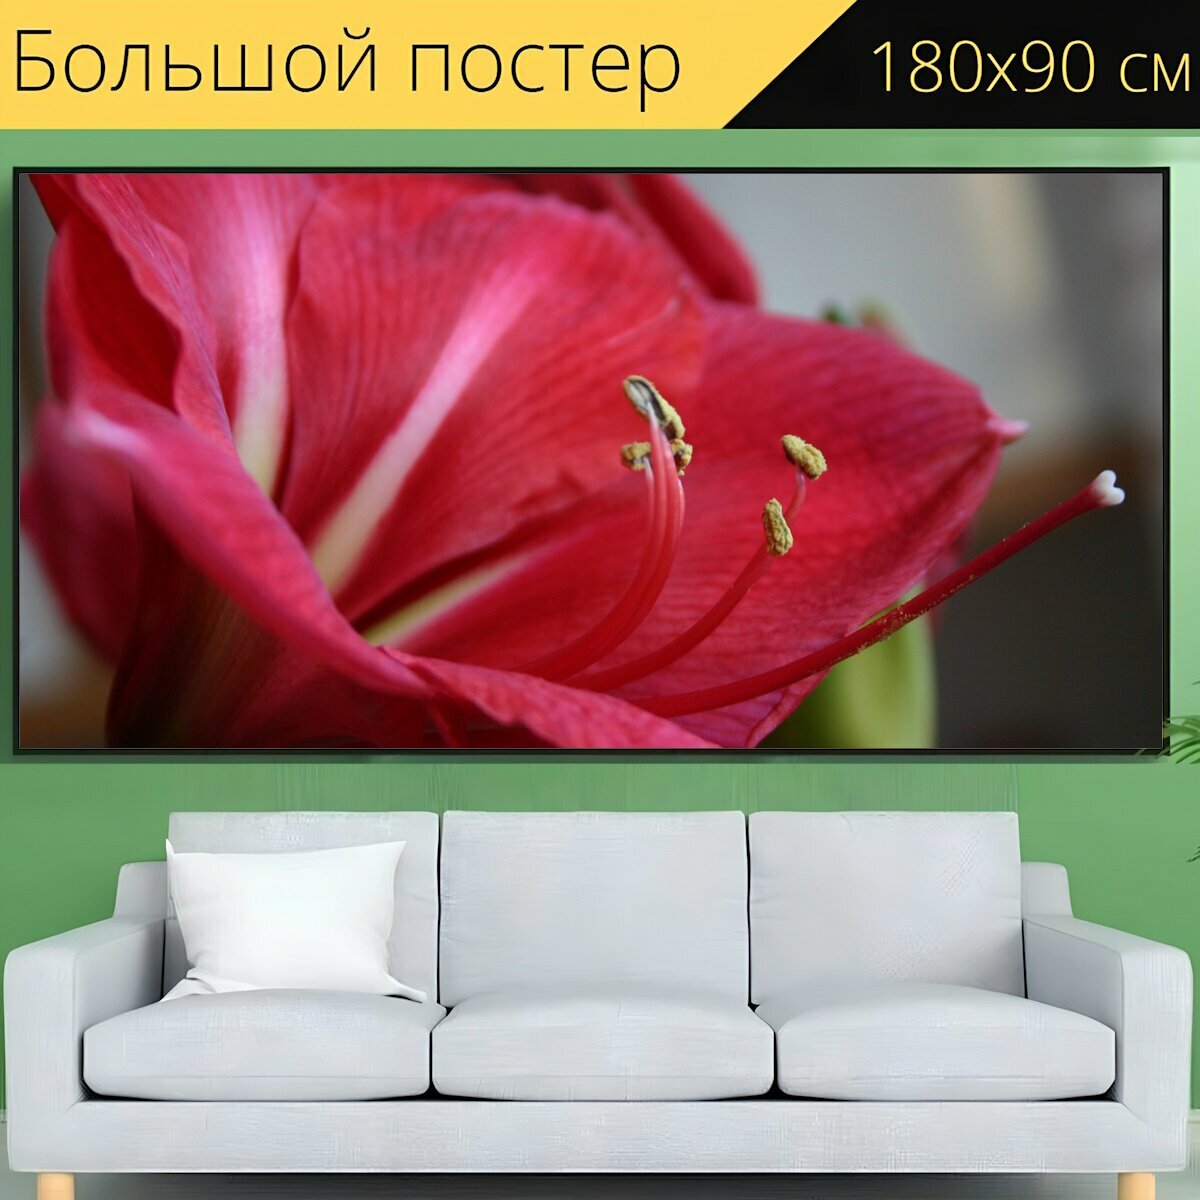 Большой постер "Амариллис, цветок, красный цветок" 180 x 90 см. для интерьера